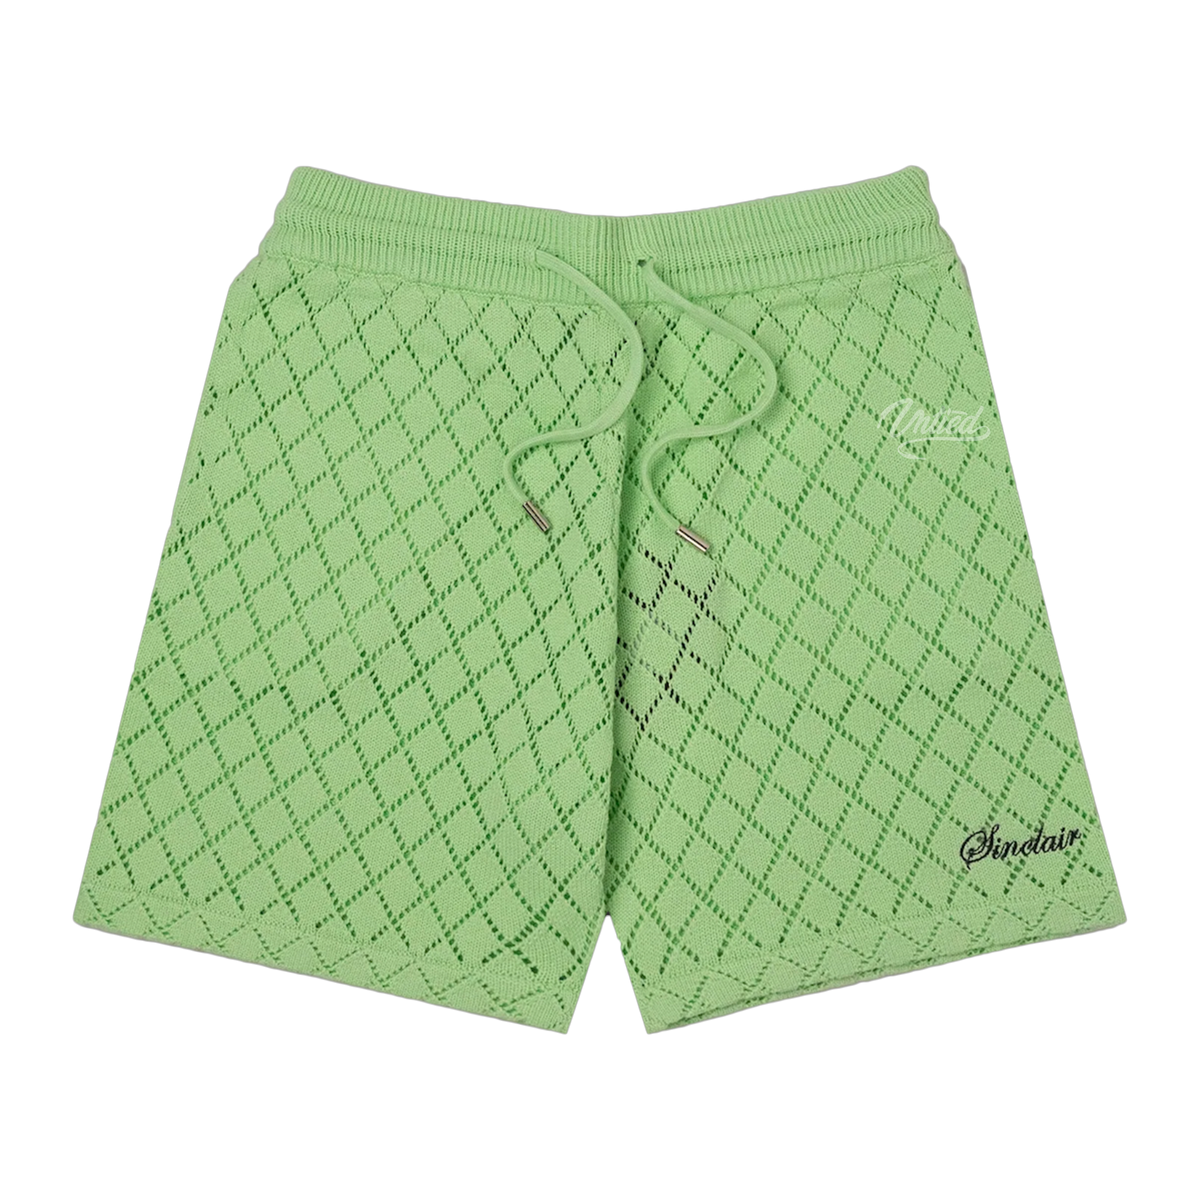 Sinclair Crochet Shorts "Mint Green"